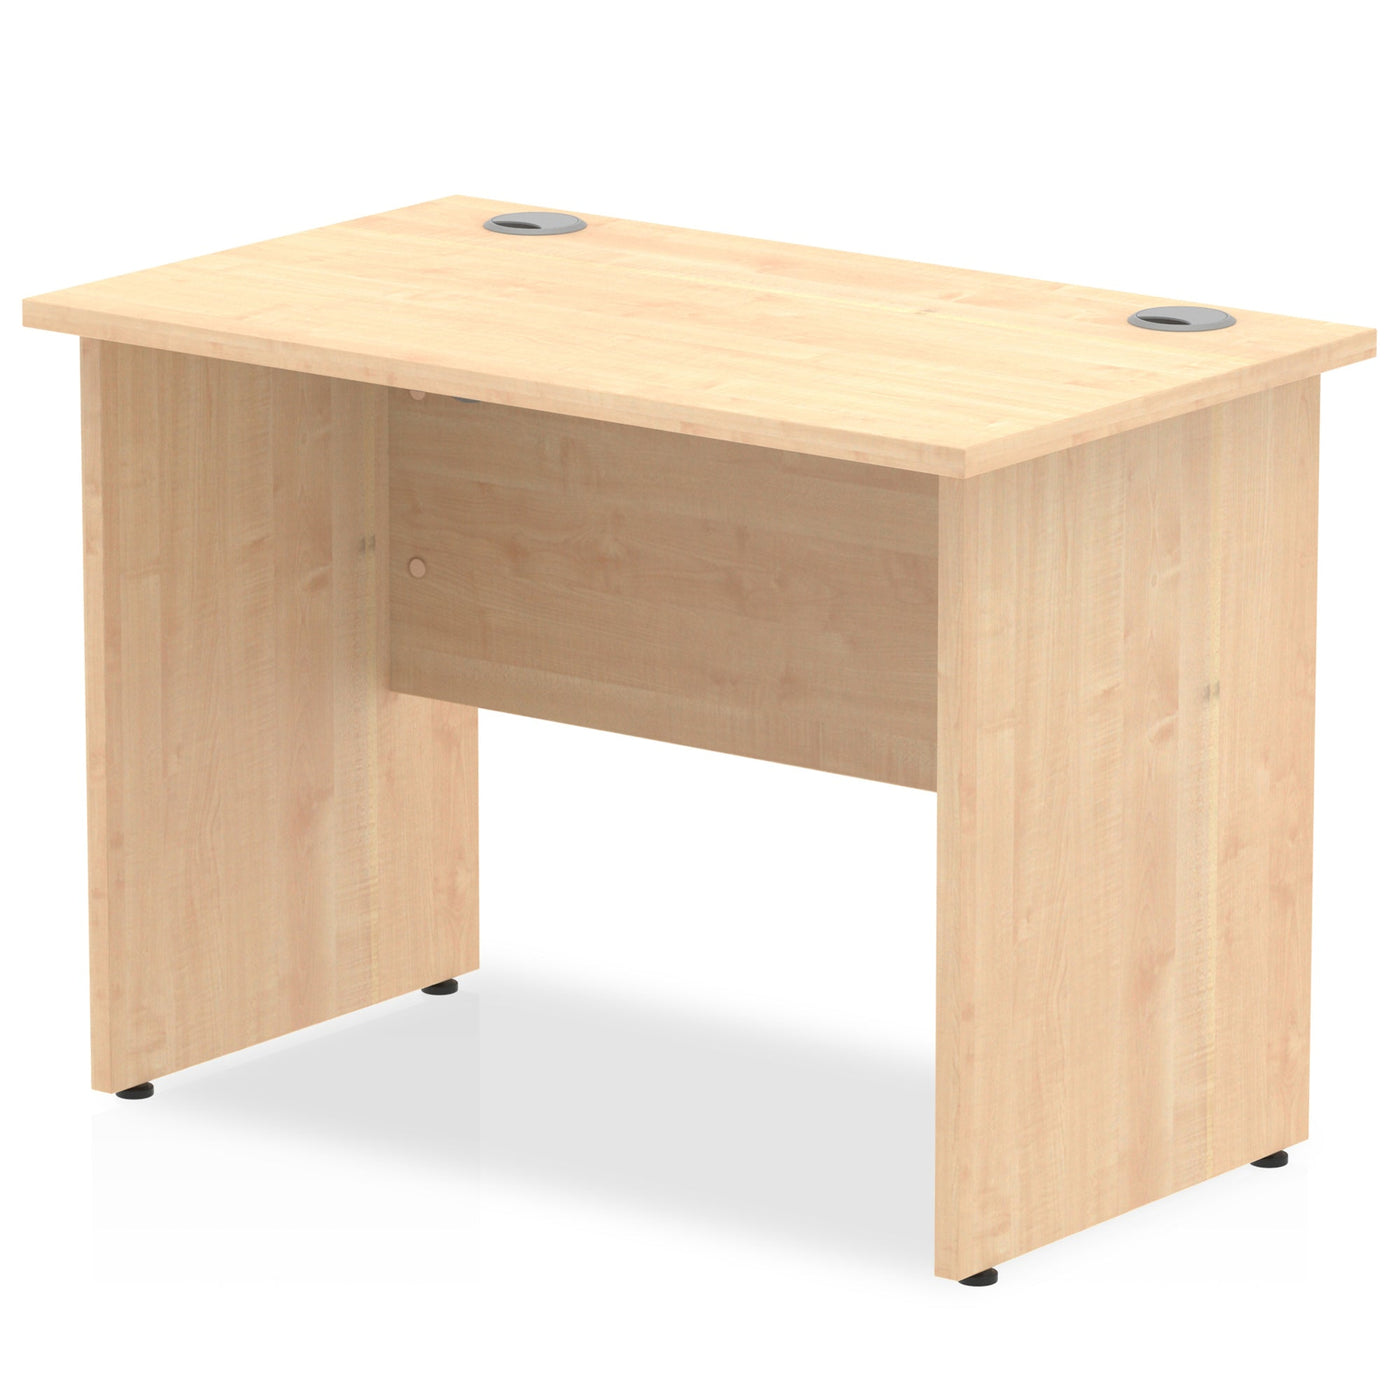 Impulse 1000mm Slimline Desk | Panel End Desk | Home Office Furniture | Smart Storage Desk | Homework Desk | Work From Home Desk  | Wooden Desk